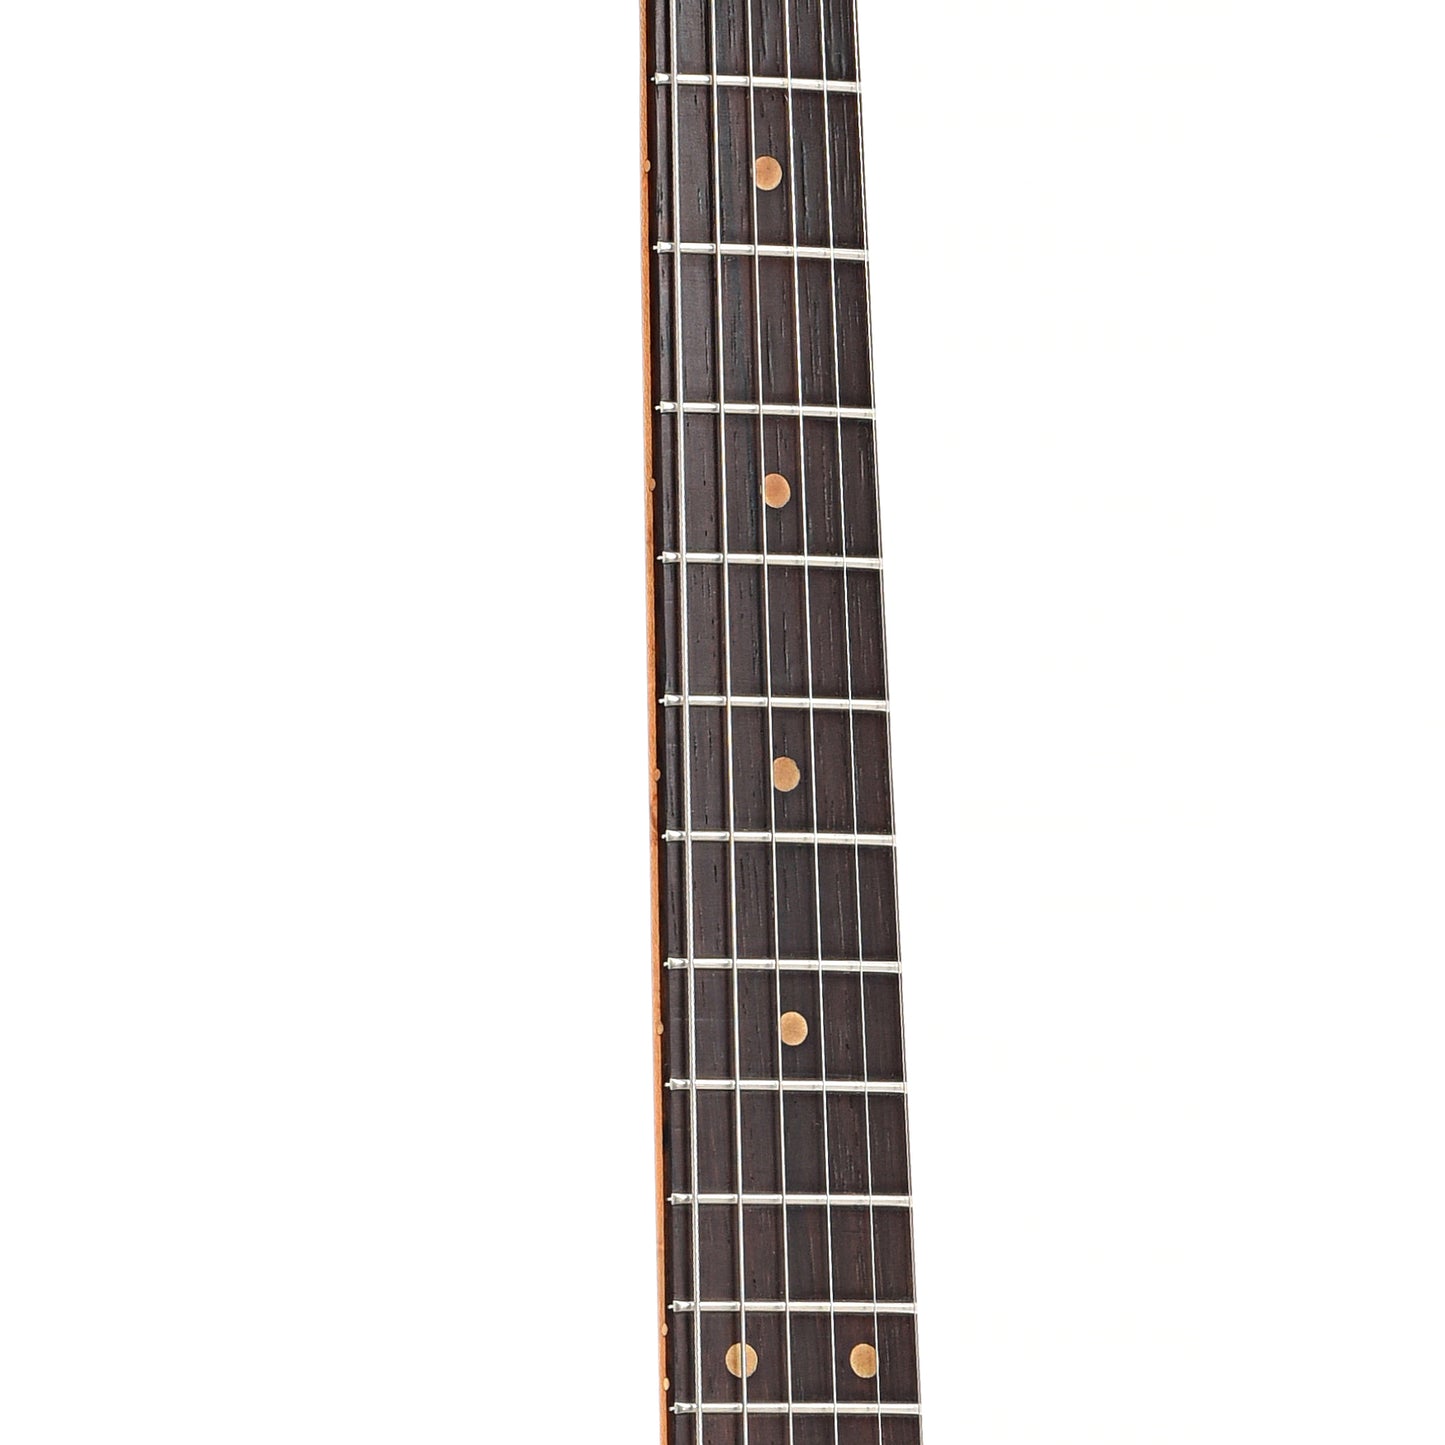 Fretboard of Fender Jaguar